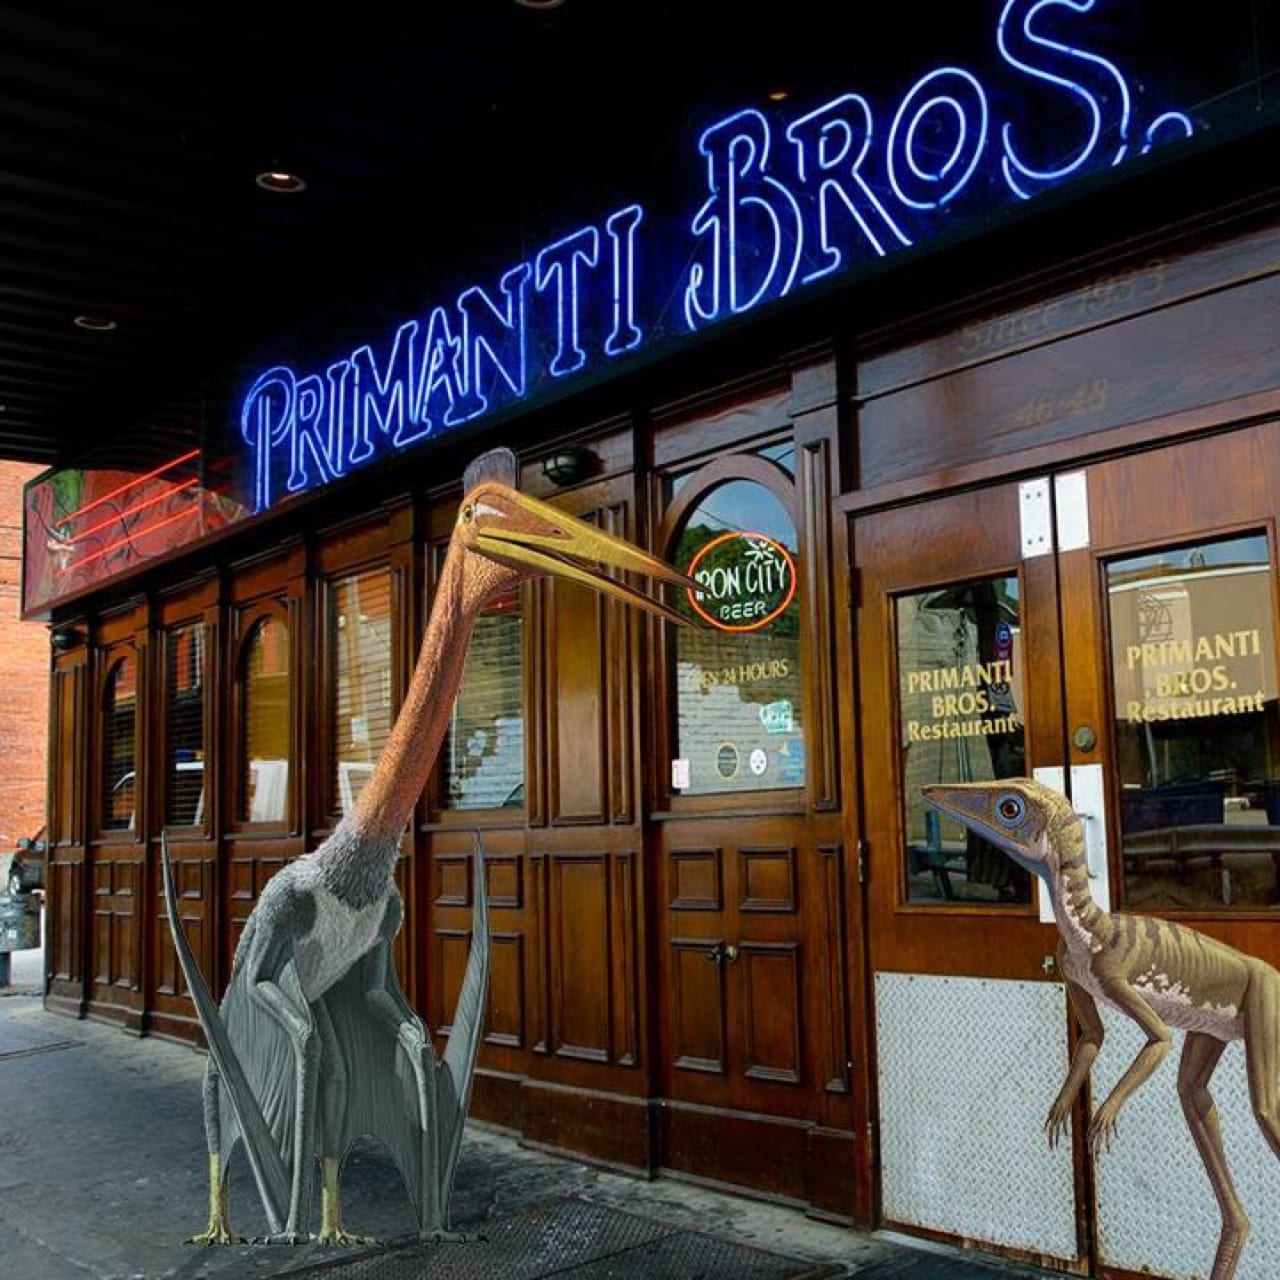 Dinosaurs at Pirmanti Bros